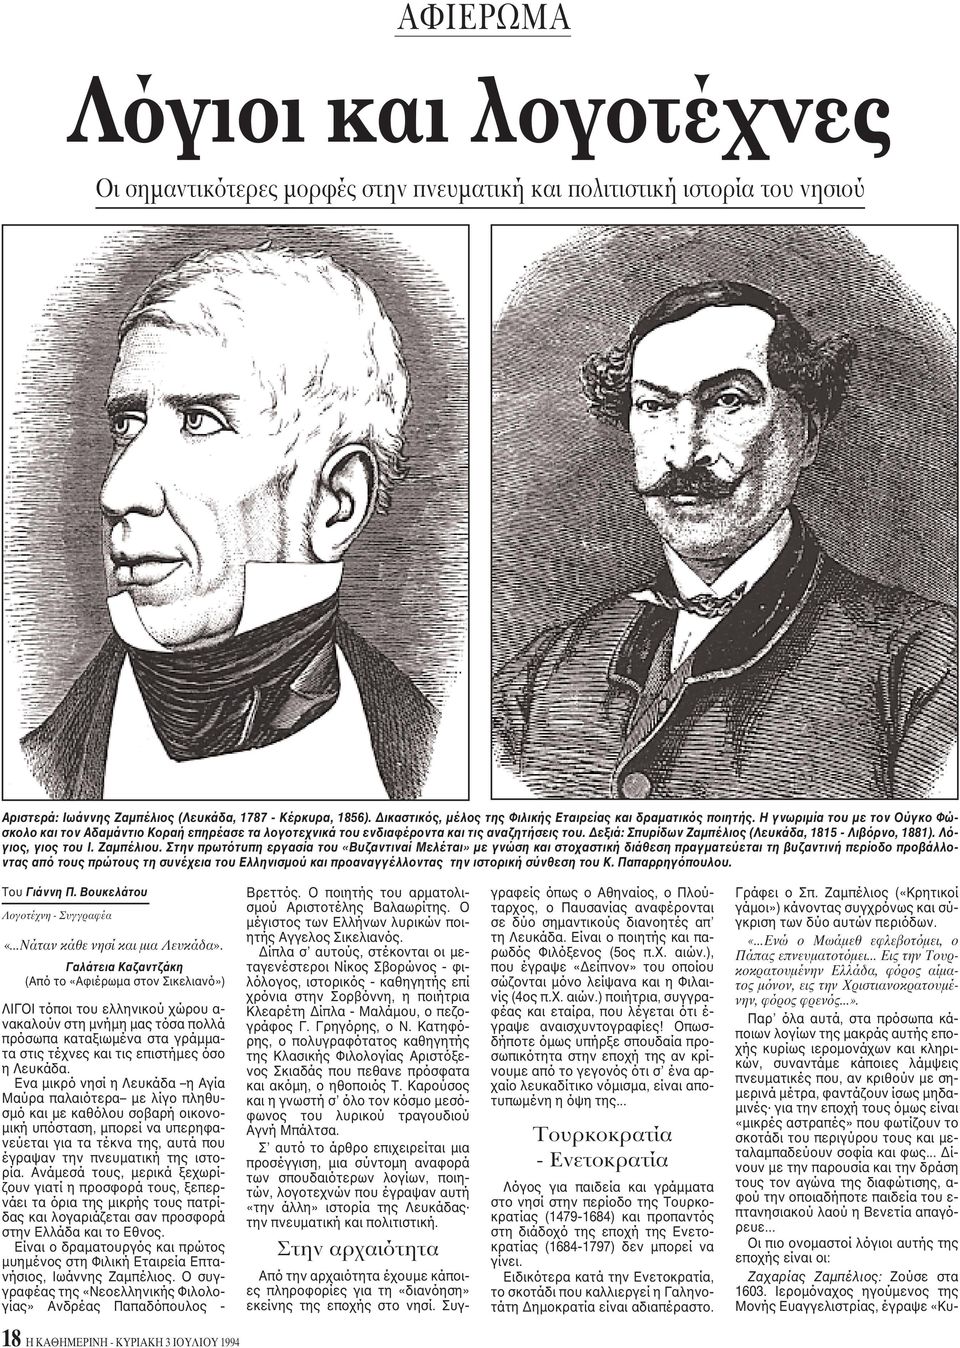 Δεξιά: Σπυρίδων Zαμπέλιος (Λευκάδα, 1815 - Λιβόρνο, 1881). Λόγιος, γιος του I. Zαμπέλιου.